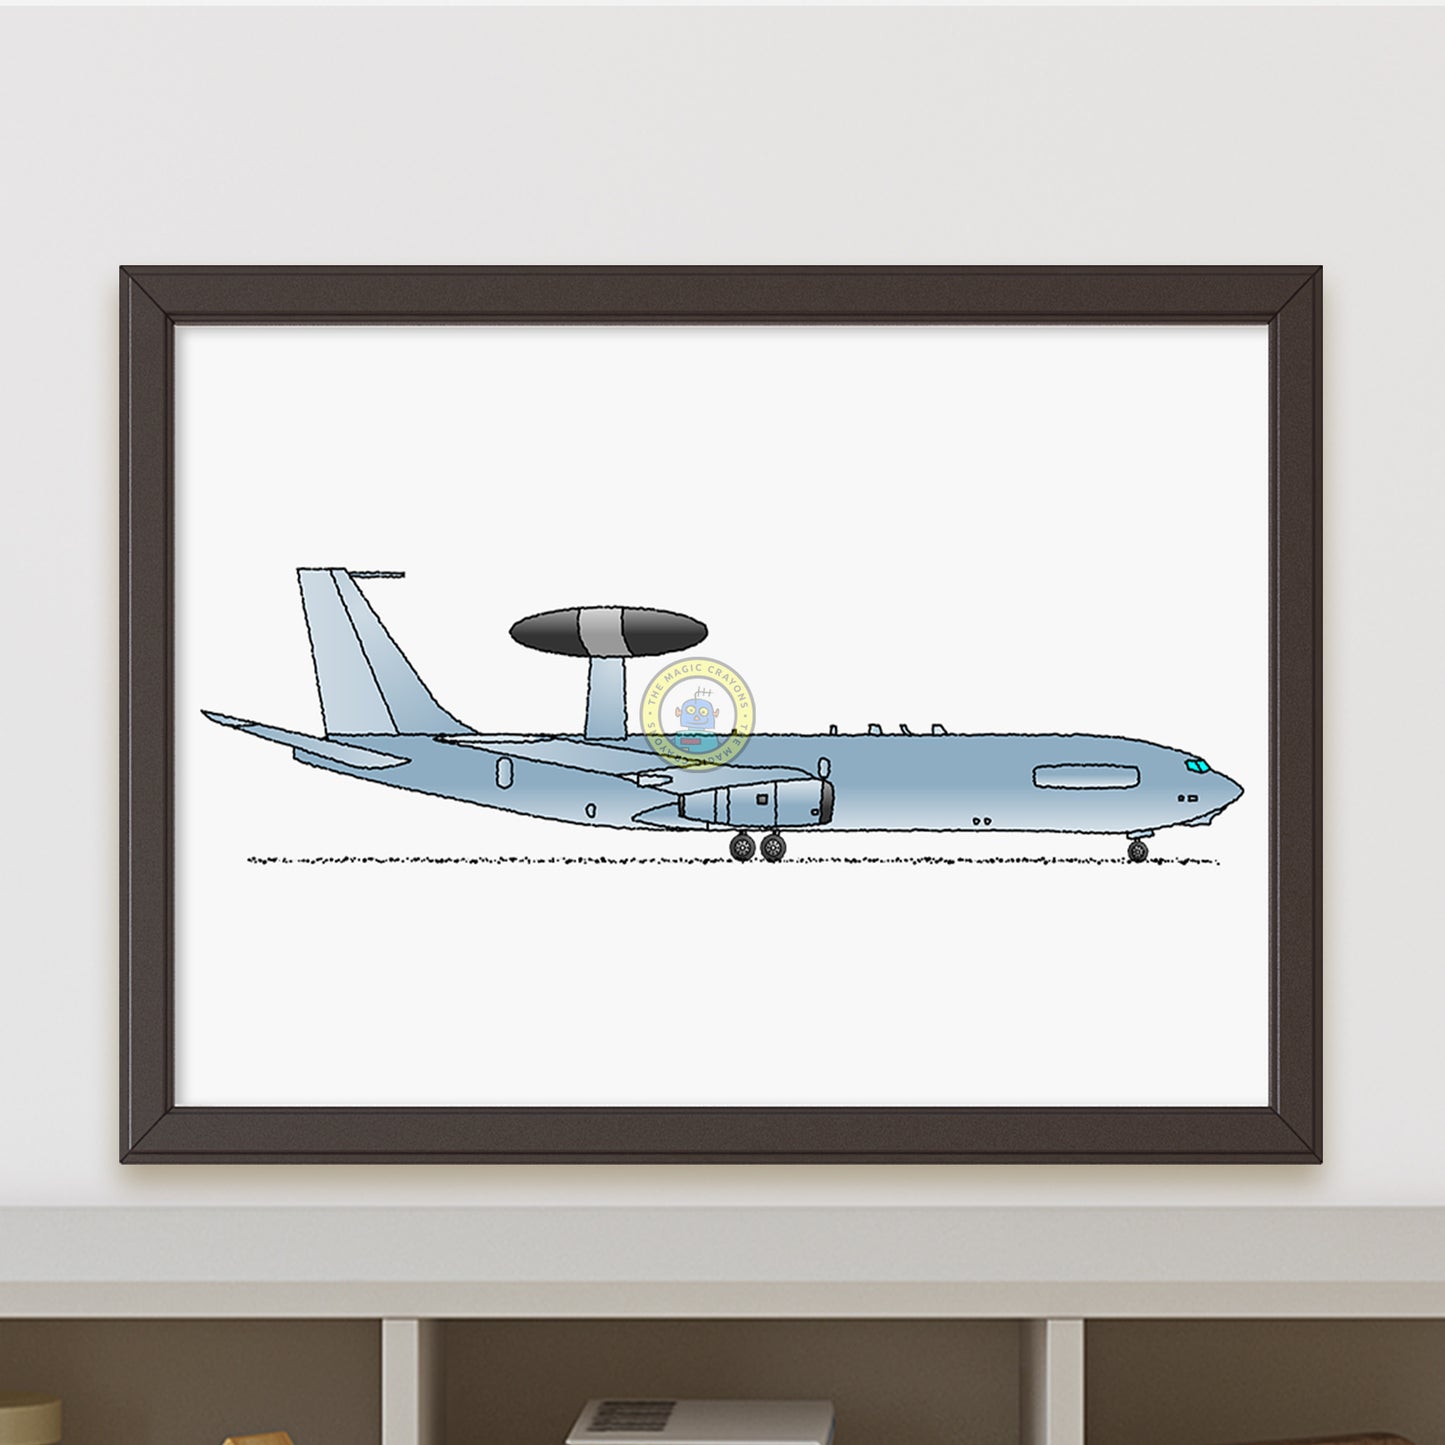 Sentry AWACS Poster R108